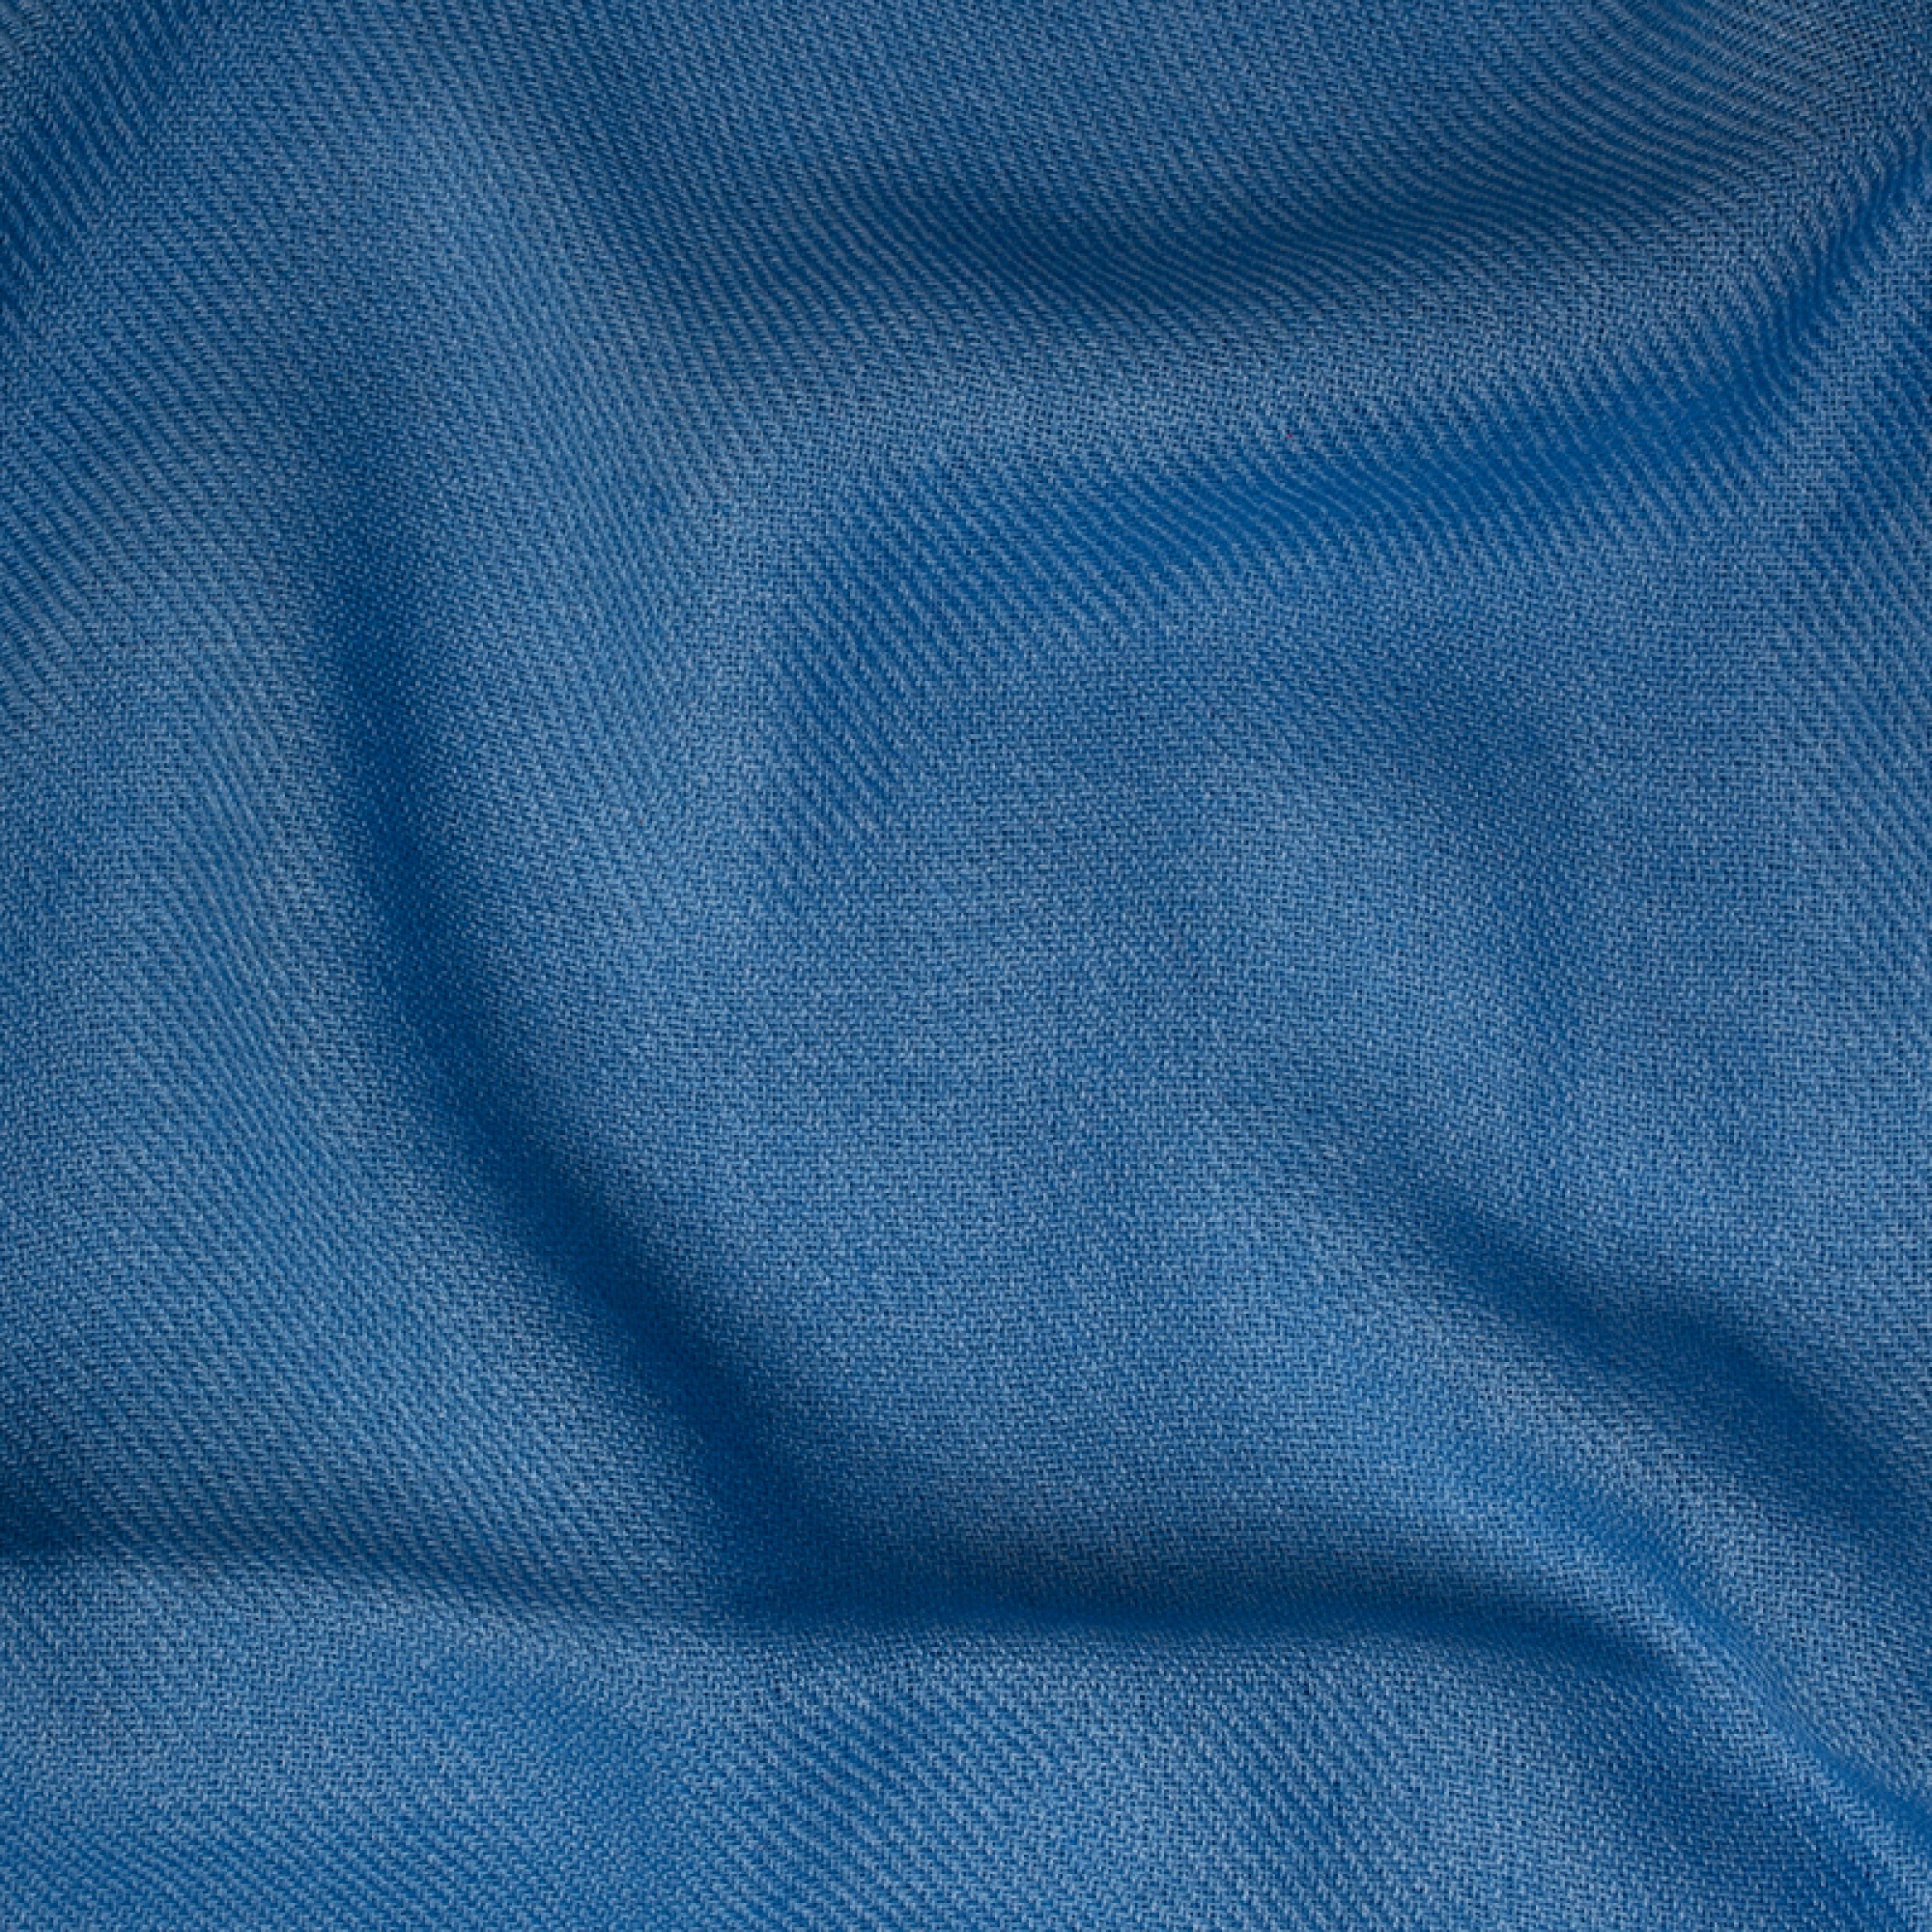 Cachemire interieur homme toodoo plain l 220 x 220 bleu miro 220x220cm